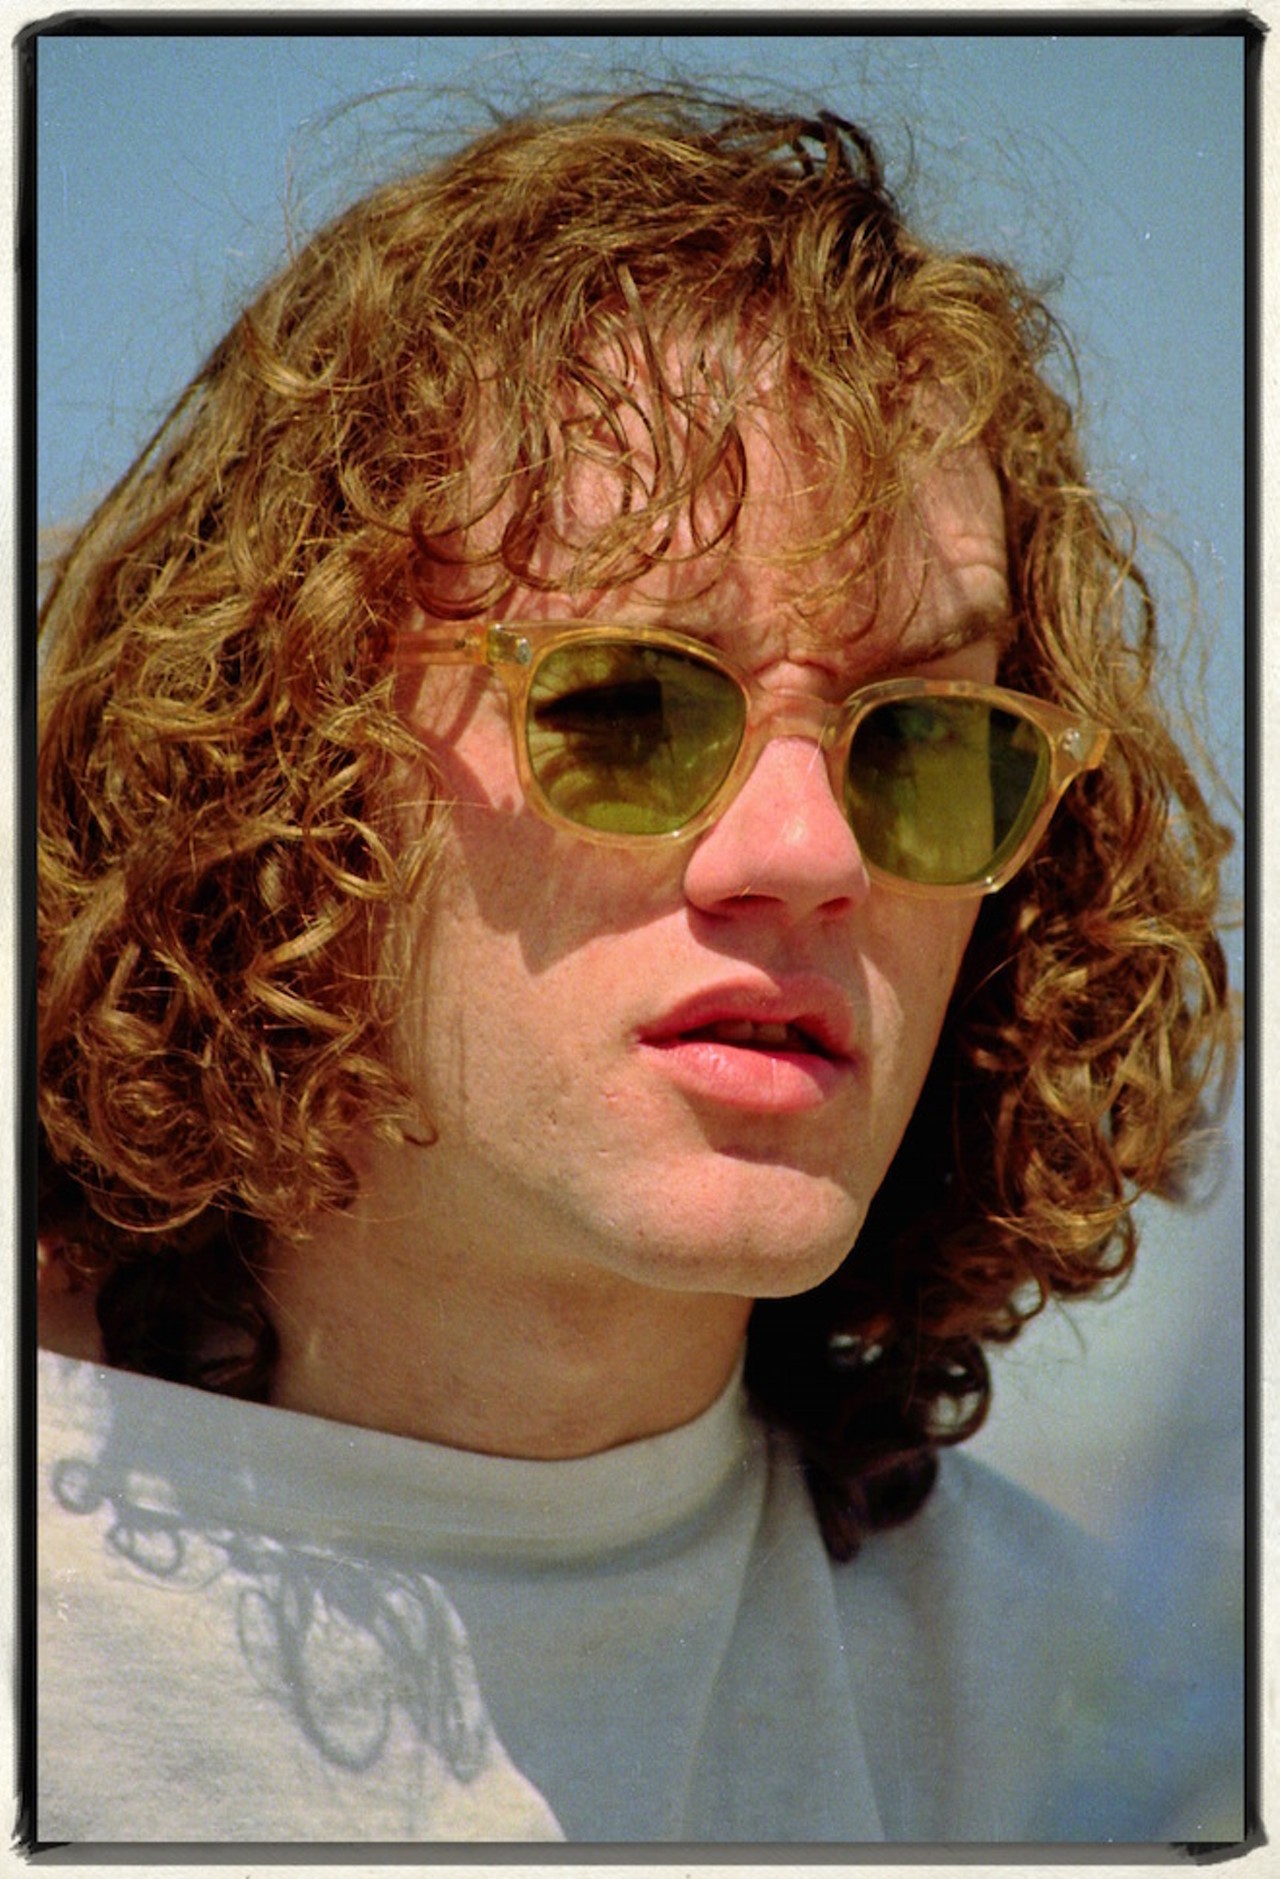 Michael Stipe of R.E.M., Daytona Spring Break (1984)